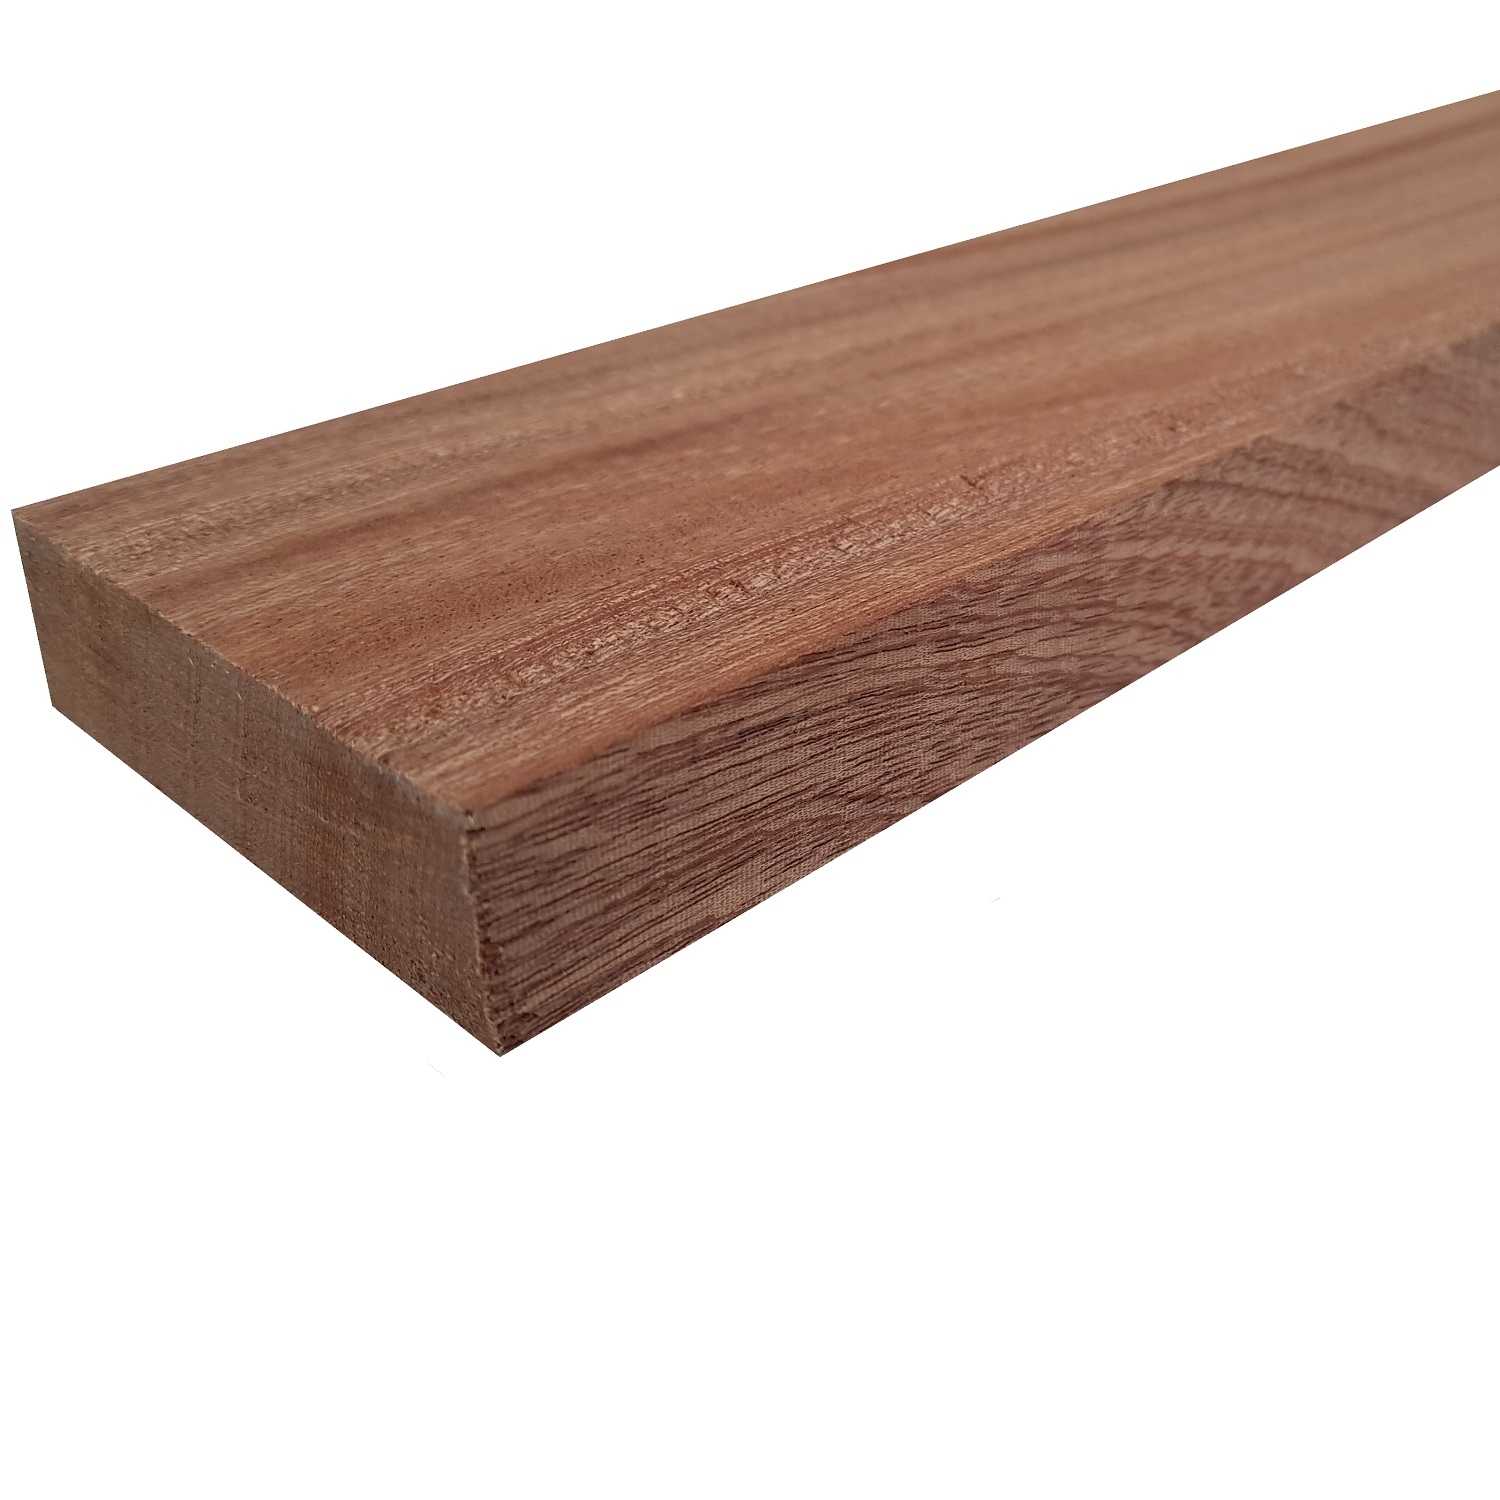 Tavola legno Mogano Piallata mm 21 x 130 x 1550